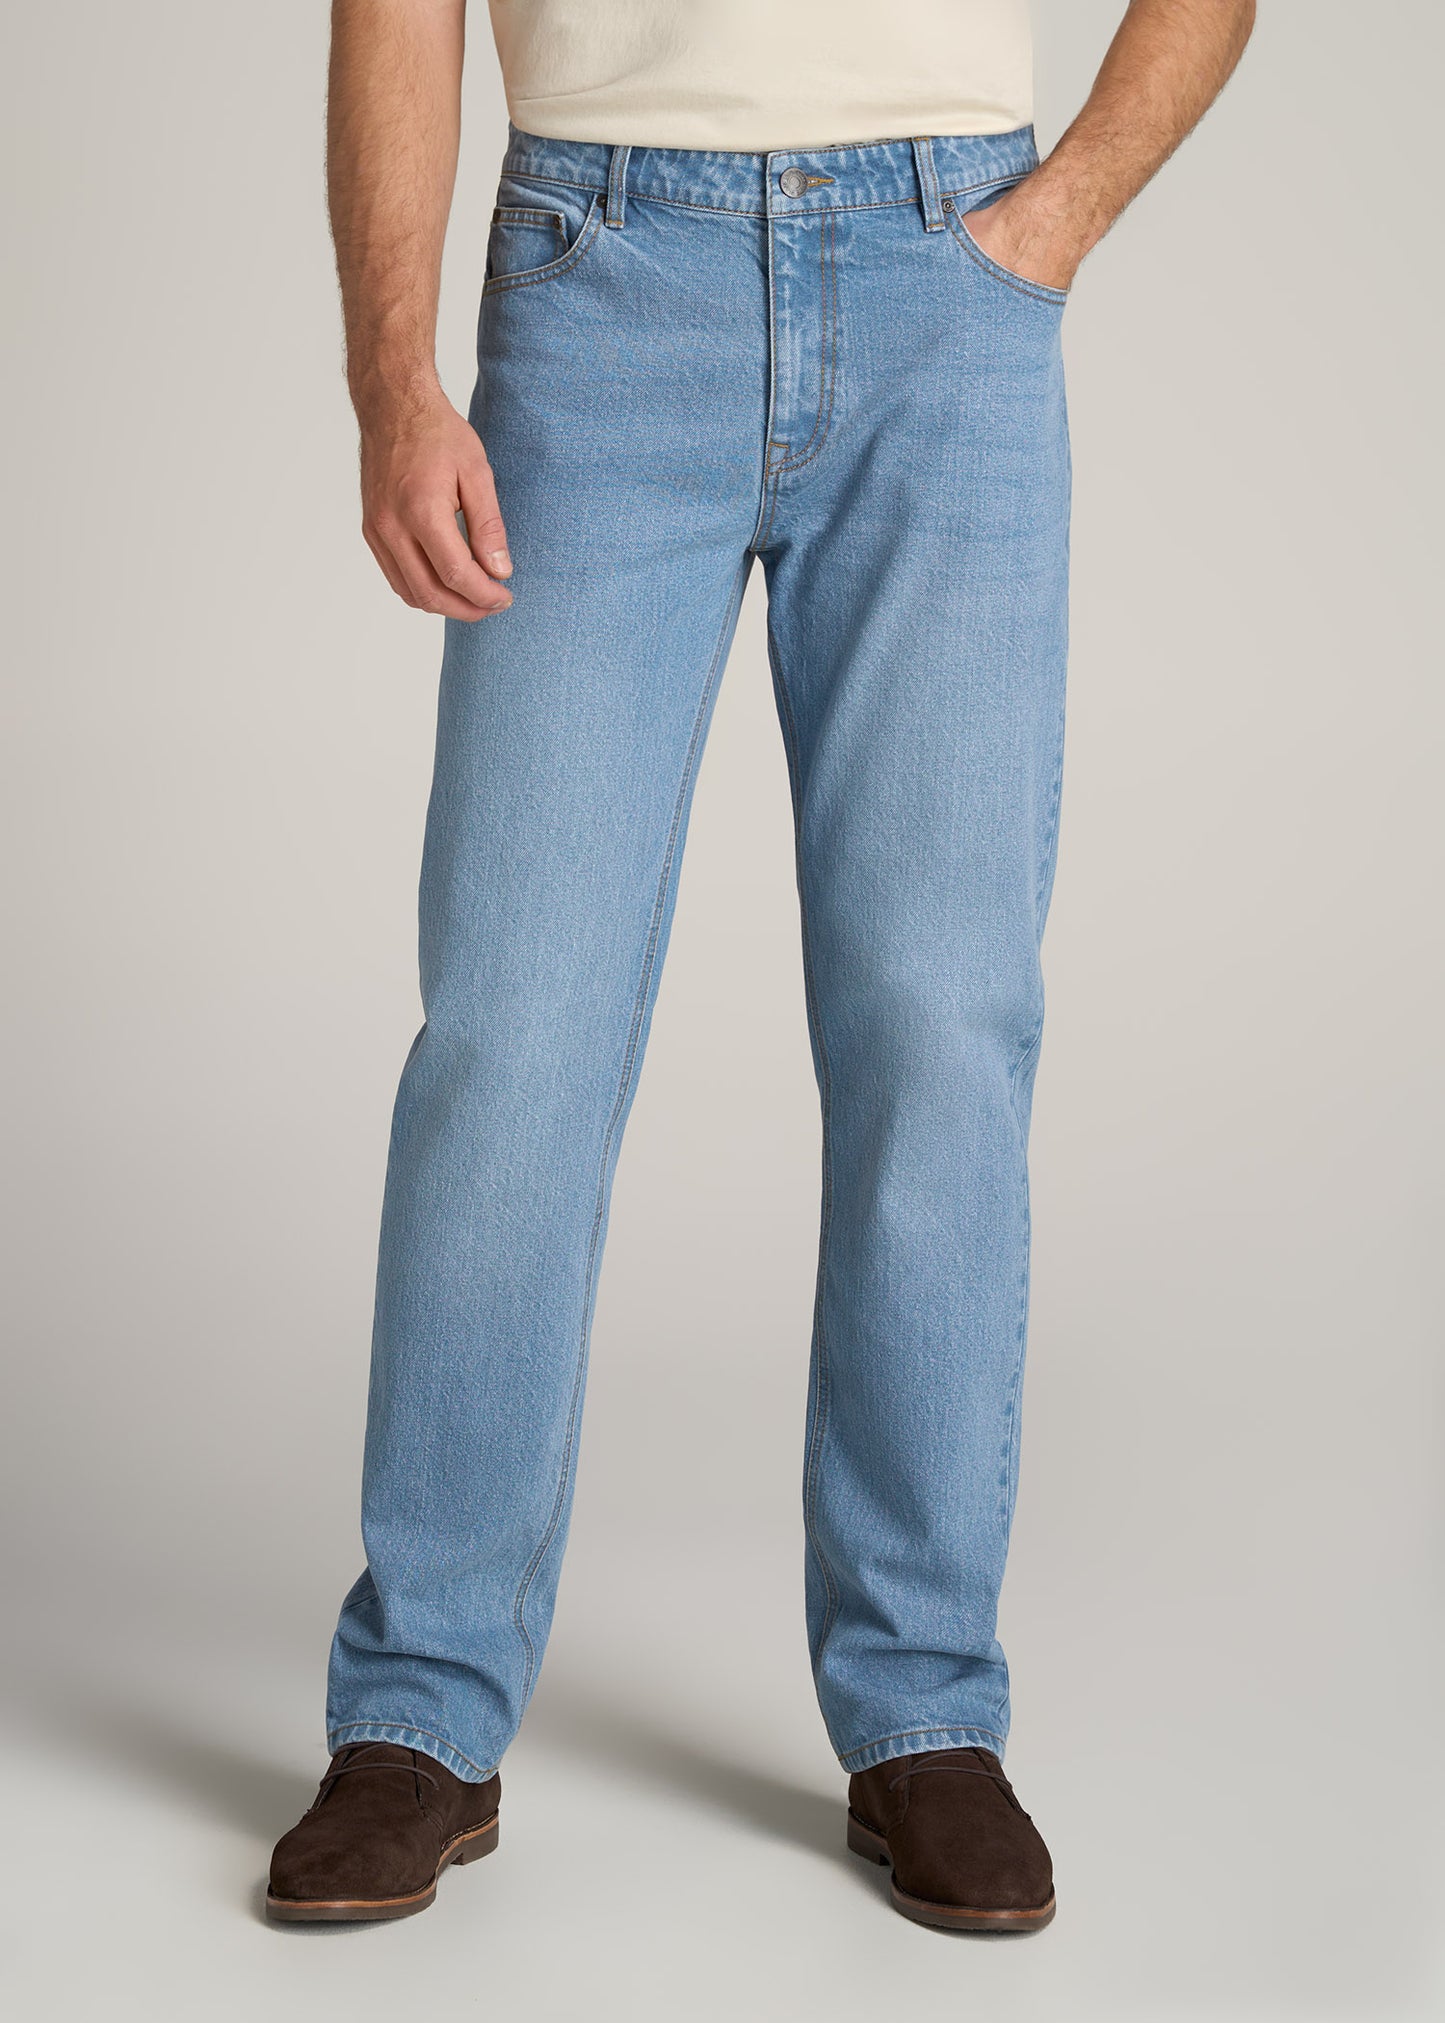 LJ&S STRAIGHT LEG Jeans for Tall Men in Stone Wash Light Blue